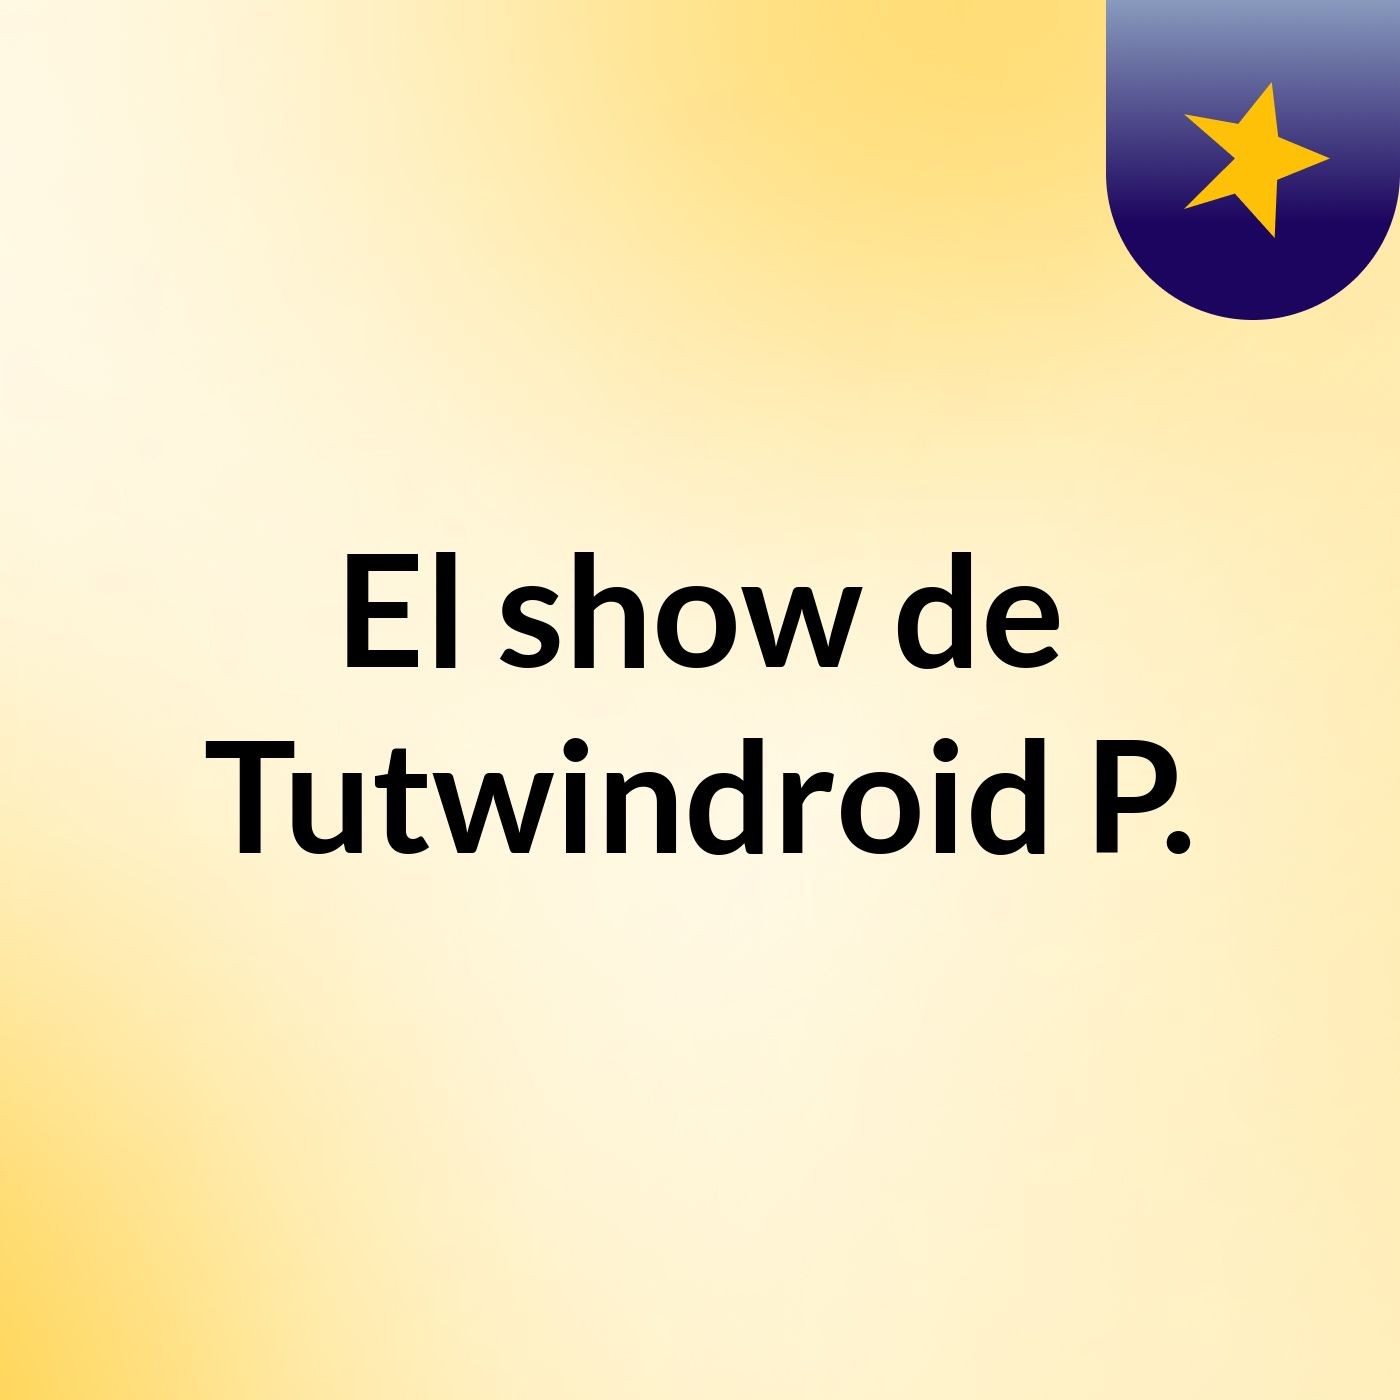 El show de Tutwindroid P.